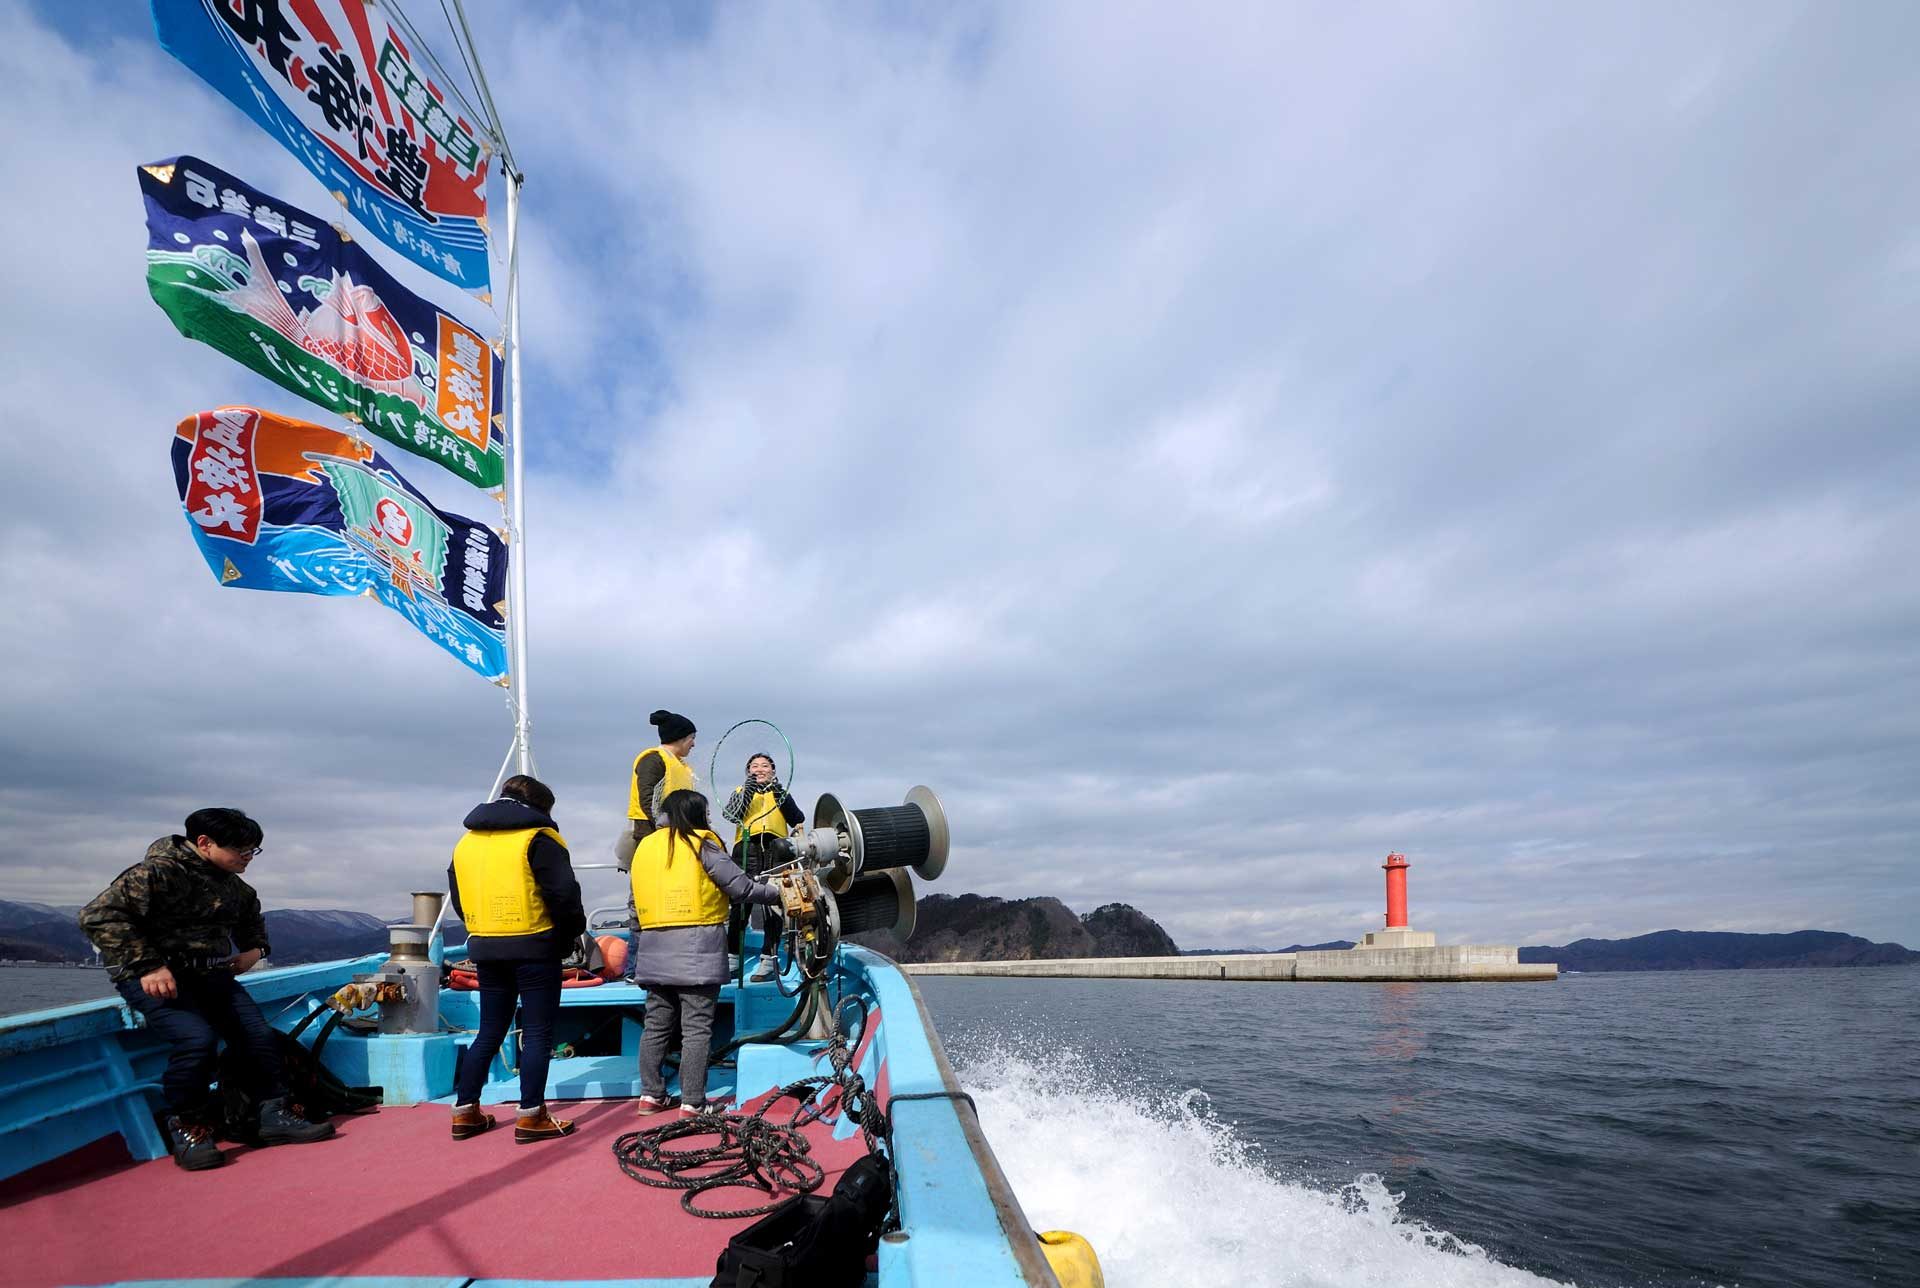 釜石湾漁船クルーズ 漁師が知る特別な釜石湾をご案内 釜石オープン フィールド ミュージアム